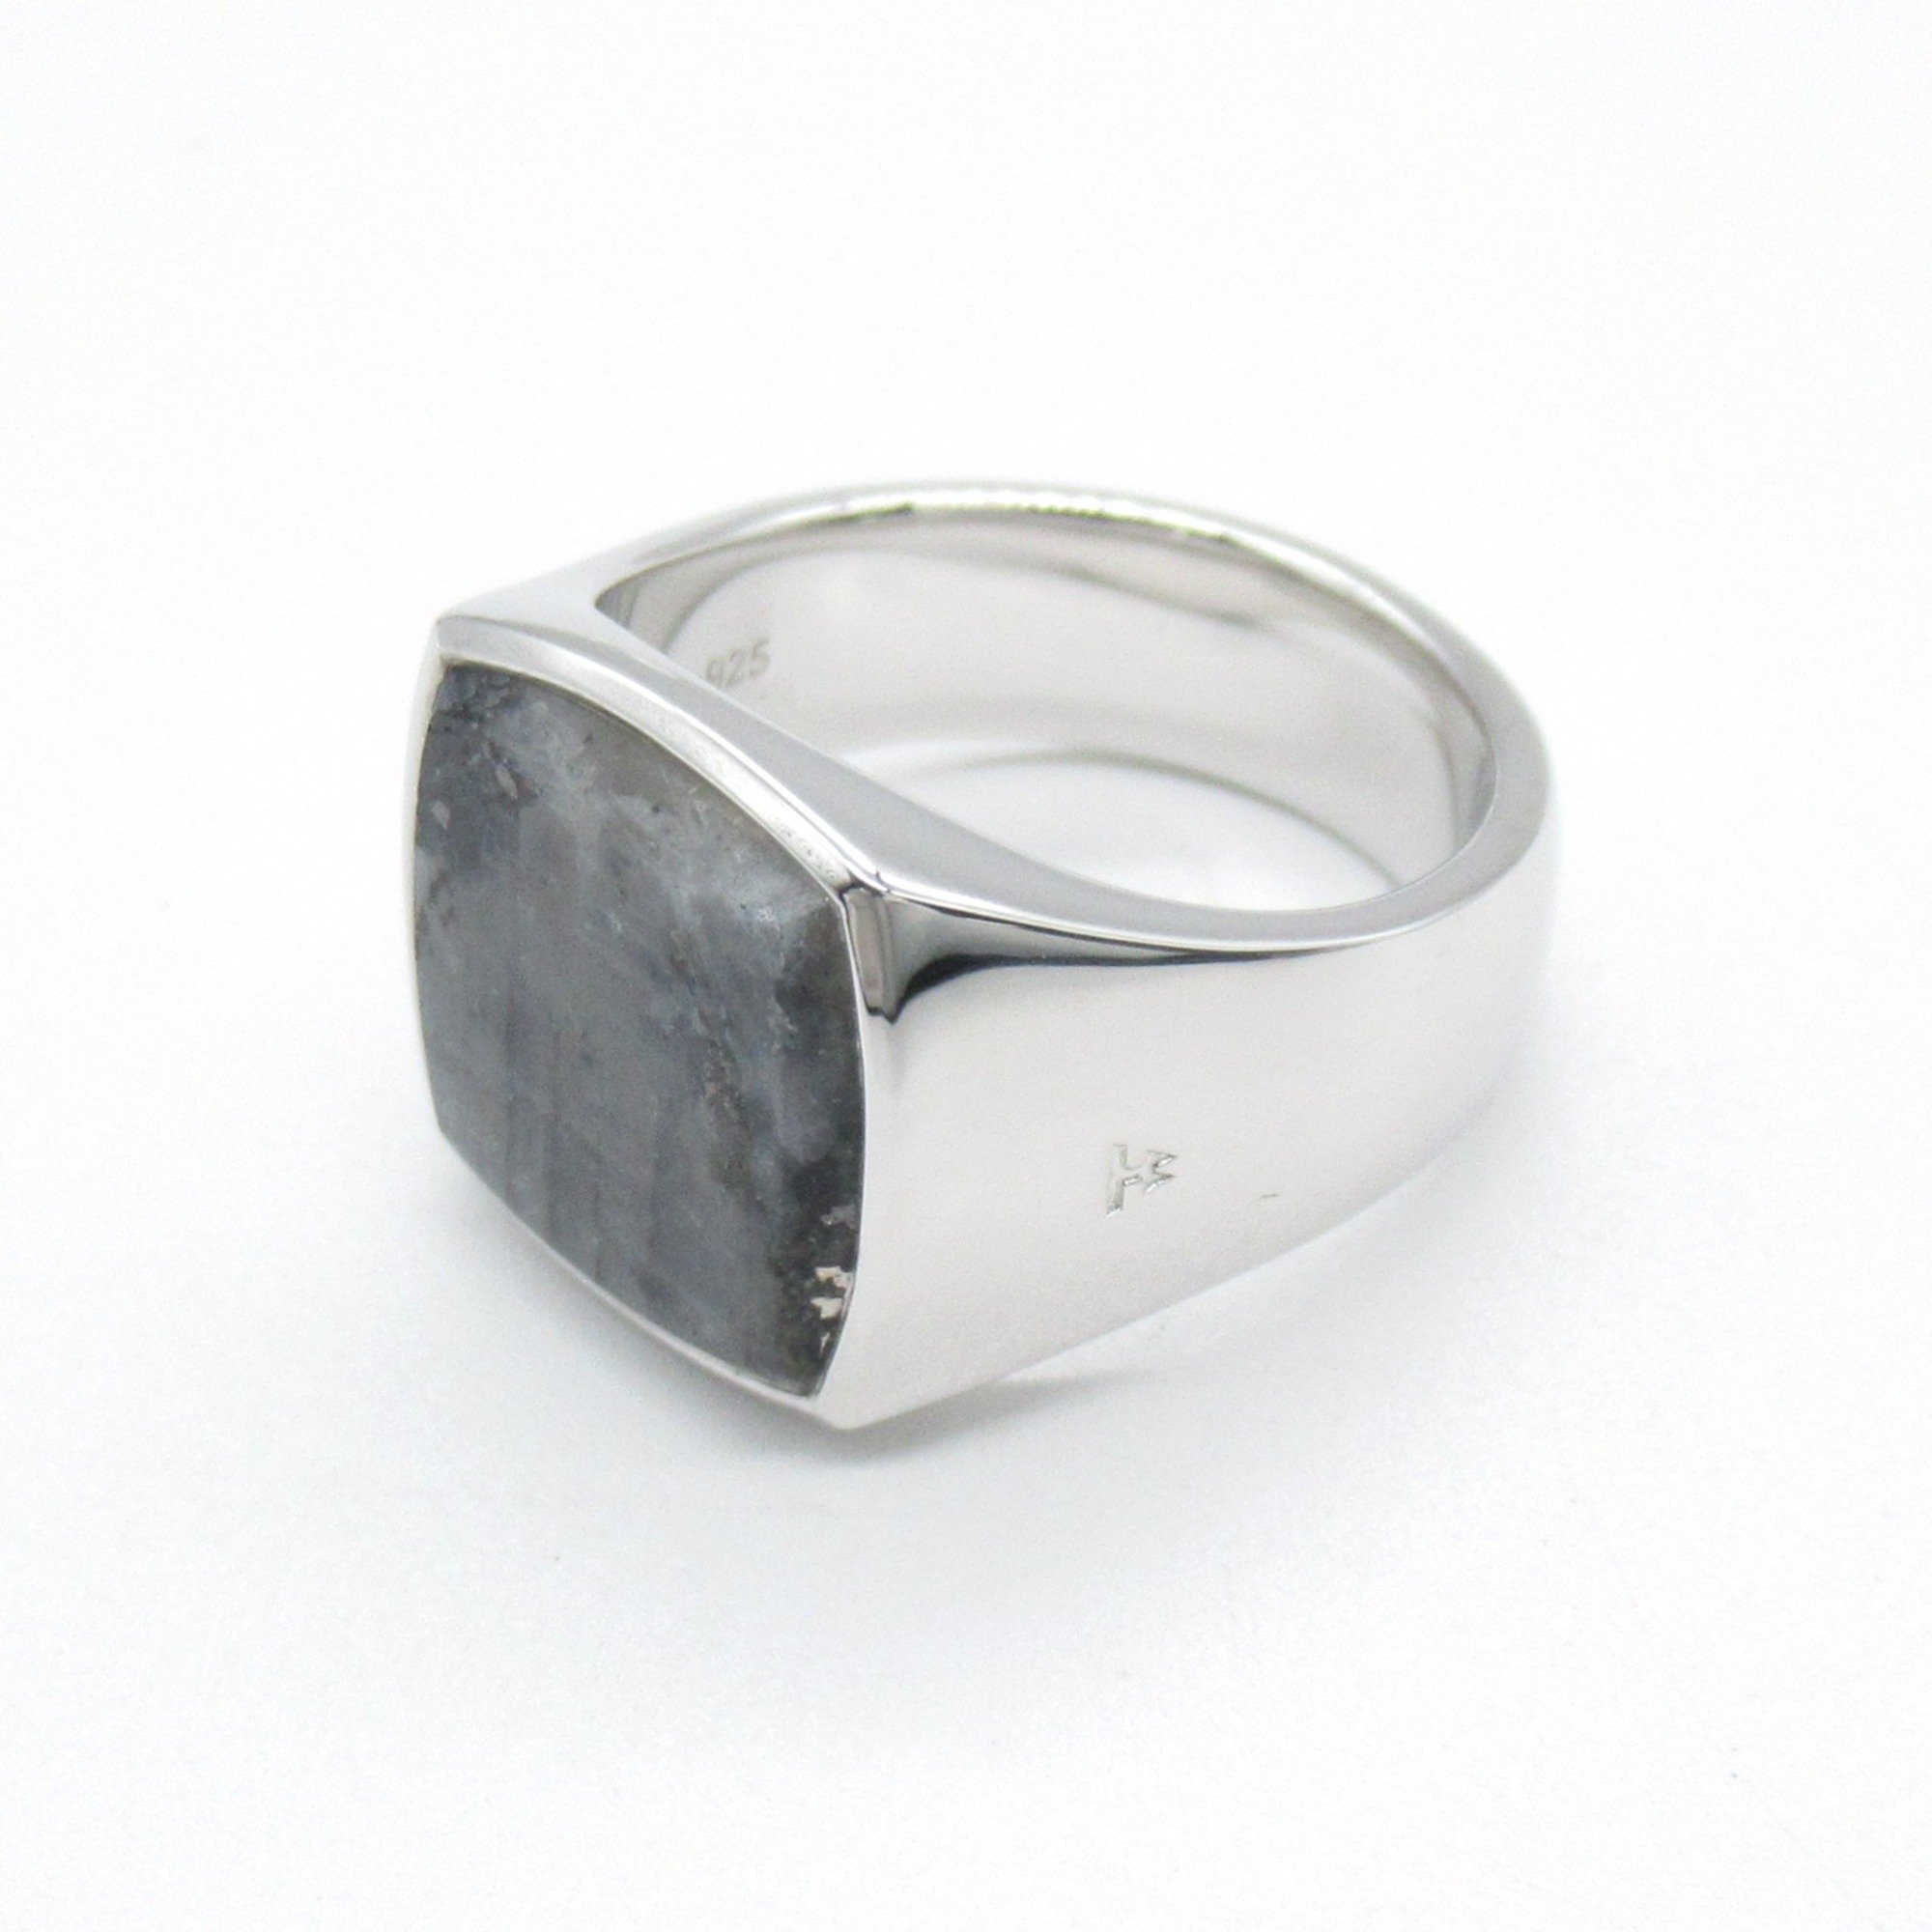 TOM WOOD larvi kite ring Ring Gray  Silver925 Larvikite Gray